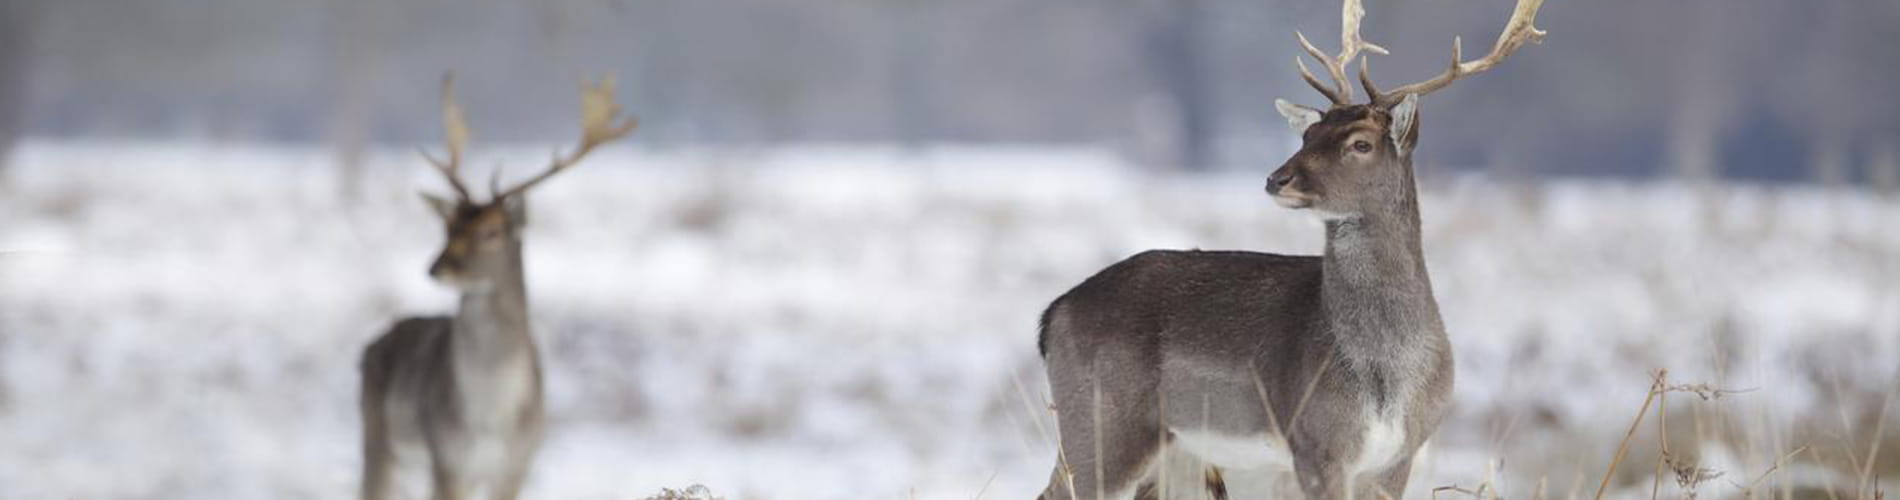 Deer antlers serve as in vitro model for rapid bone regeneration studies